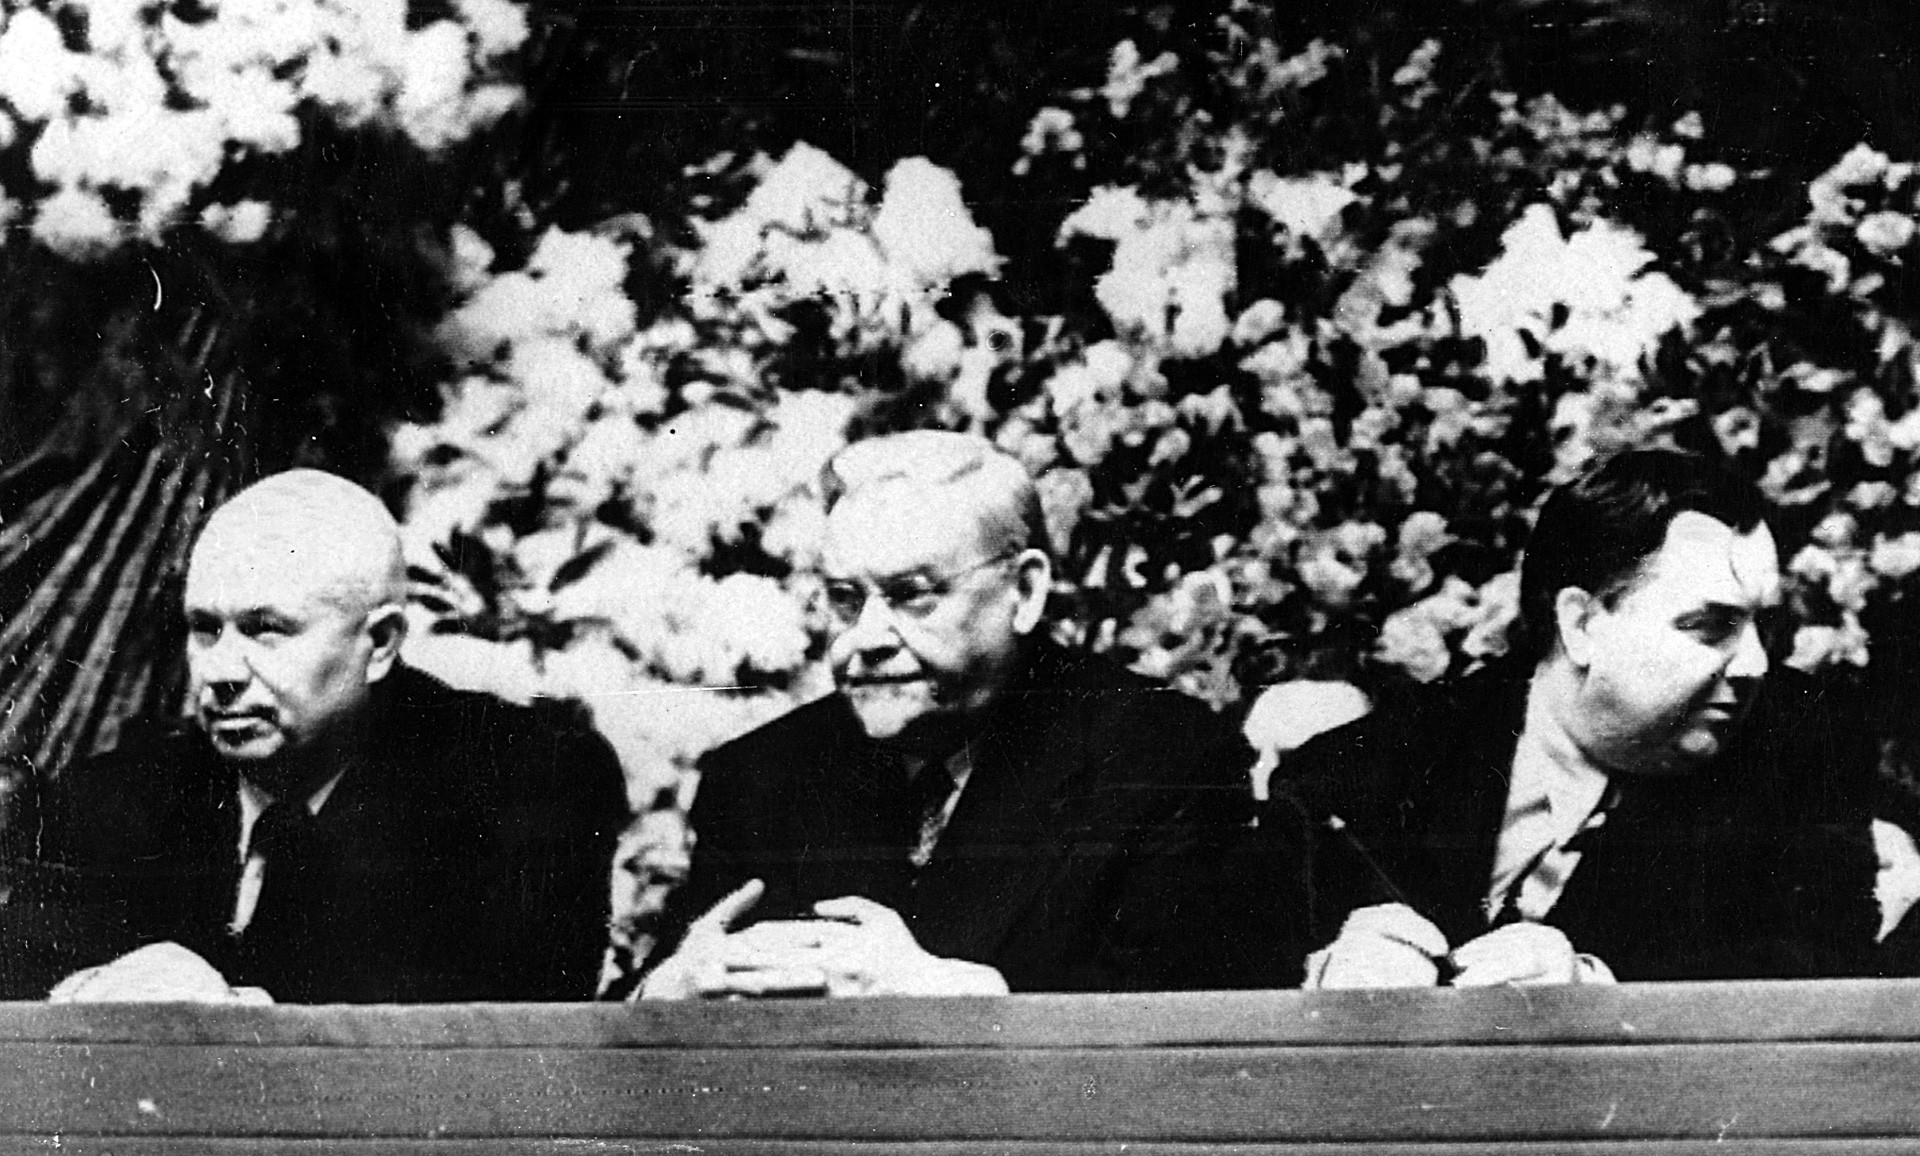 Tiga serangkai: Nikita Khrushchev, Nikolai Bulganin and Georgy Malenkov.